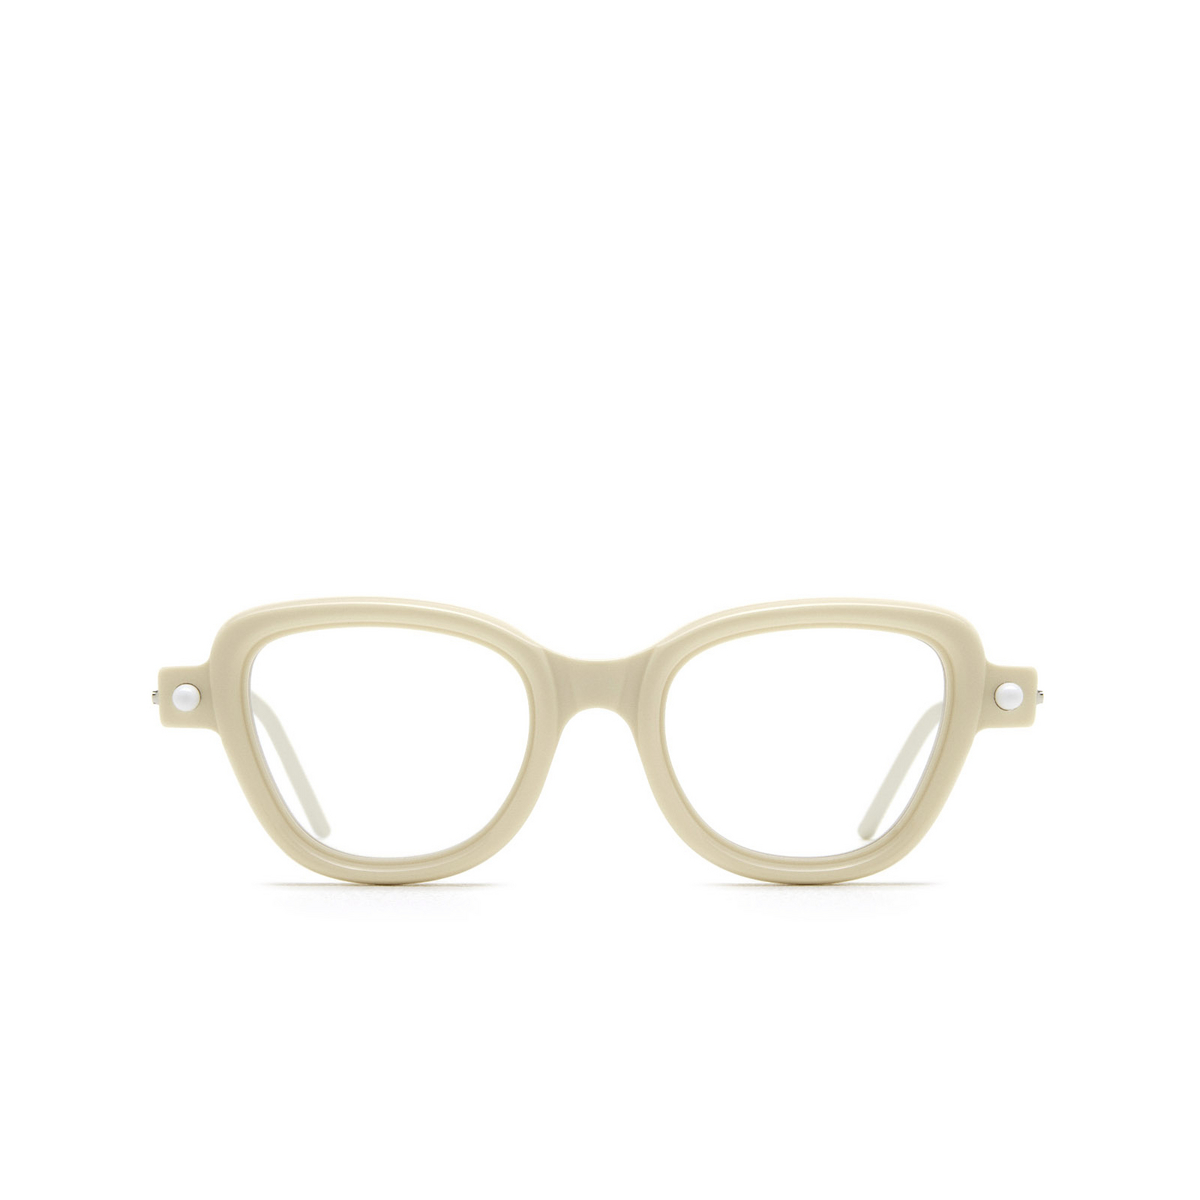 Kuboraum® Cat-eye Eyeglasses: P5 color Ivory & Matt Ivory Matt Cream Iy - front view.